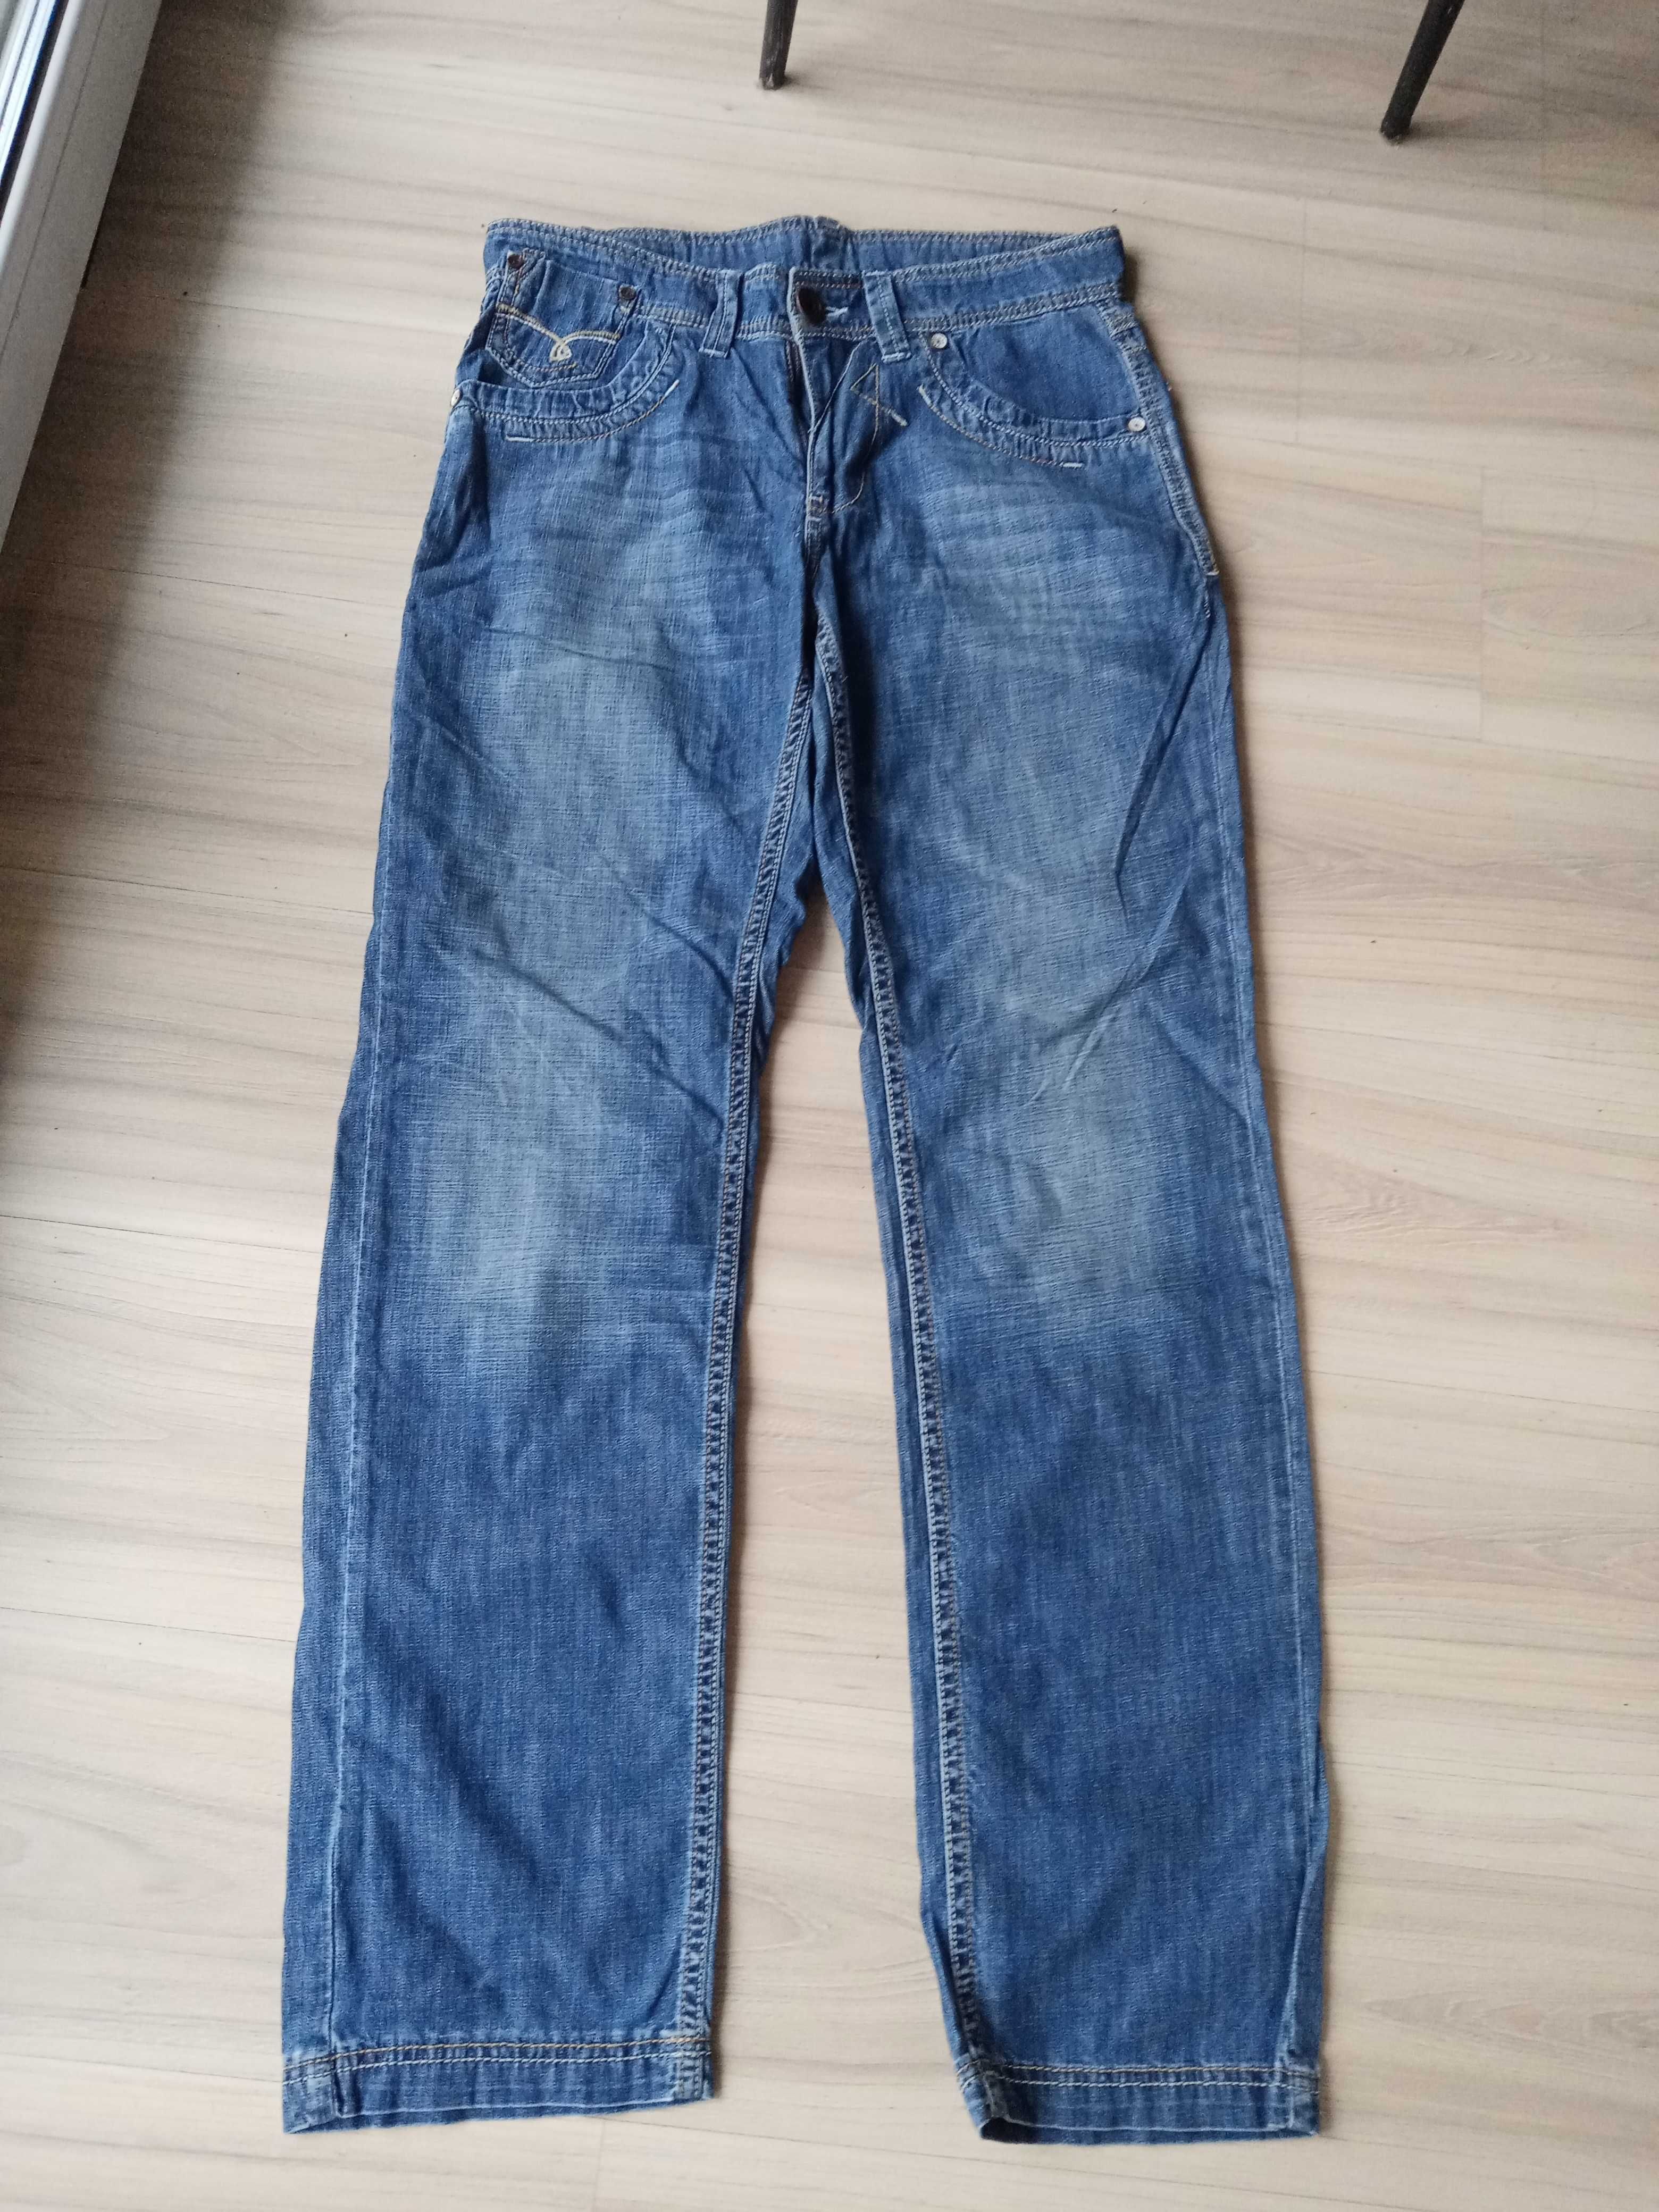 Spodnie dżinsowe męskie W 31 L 34.